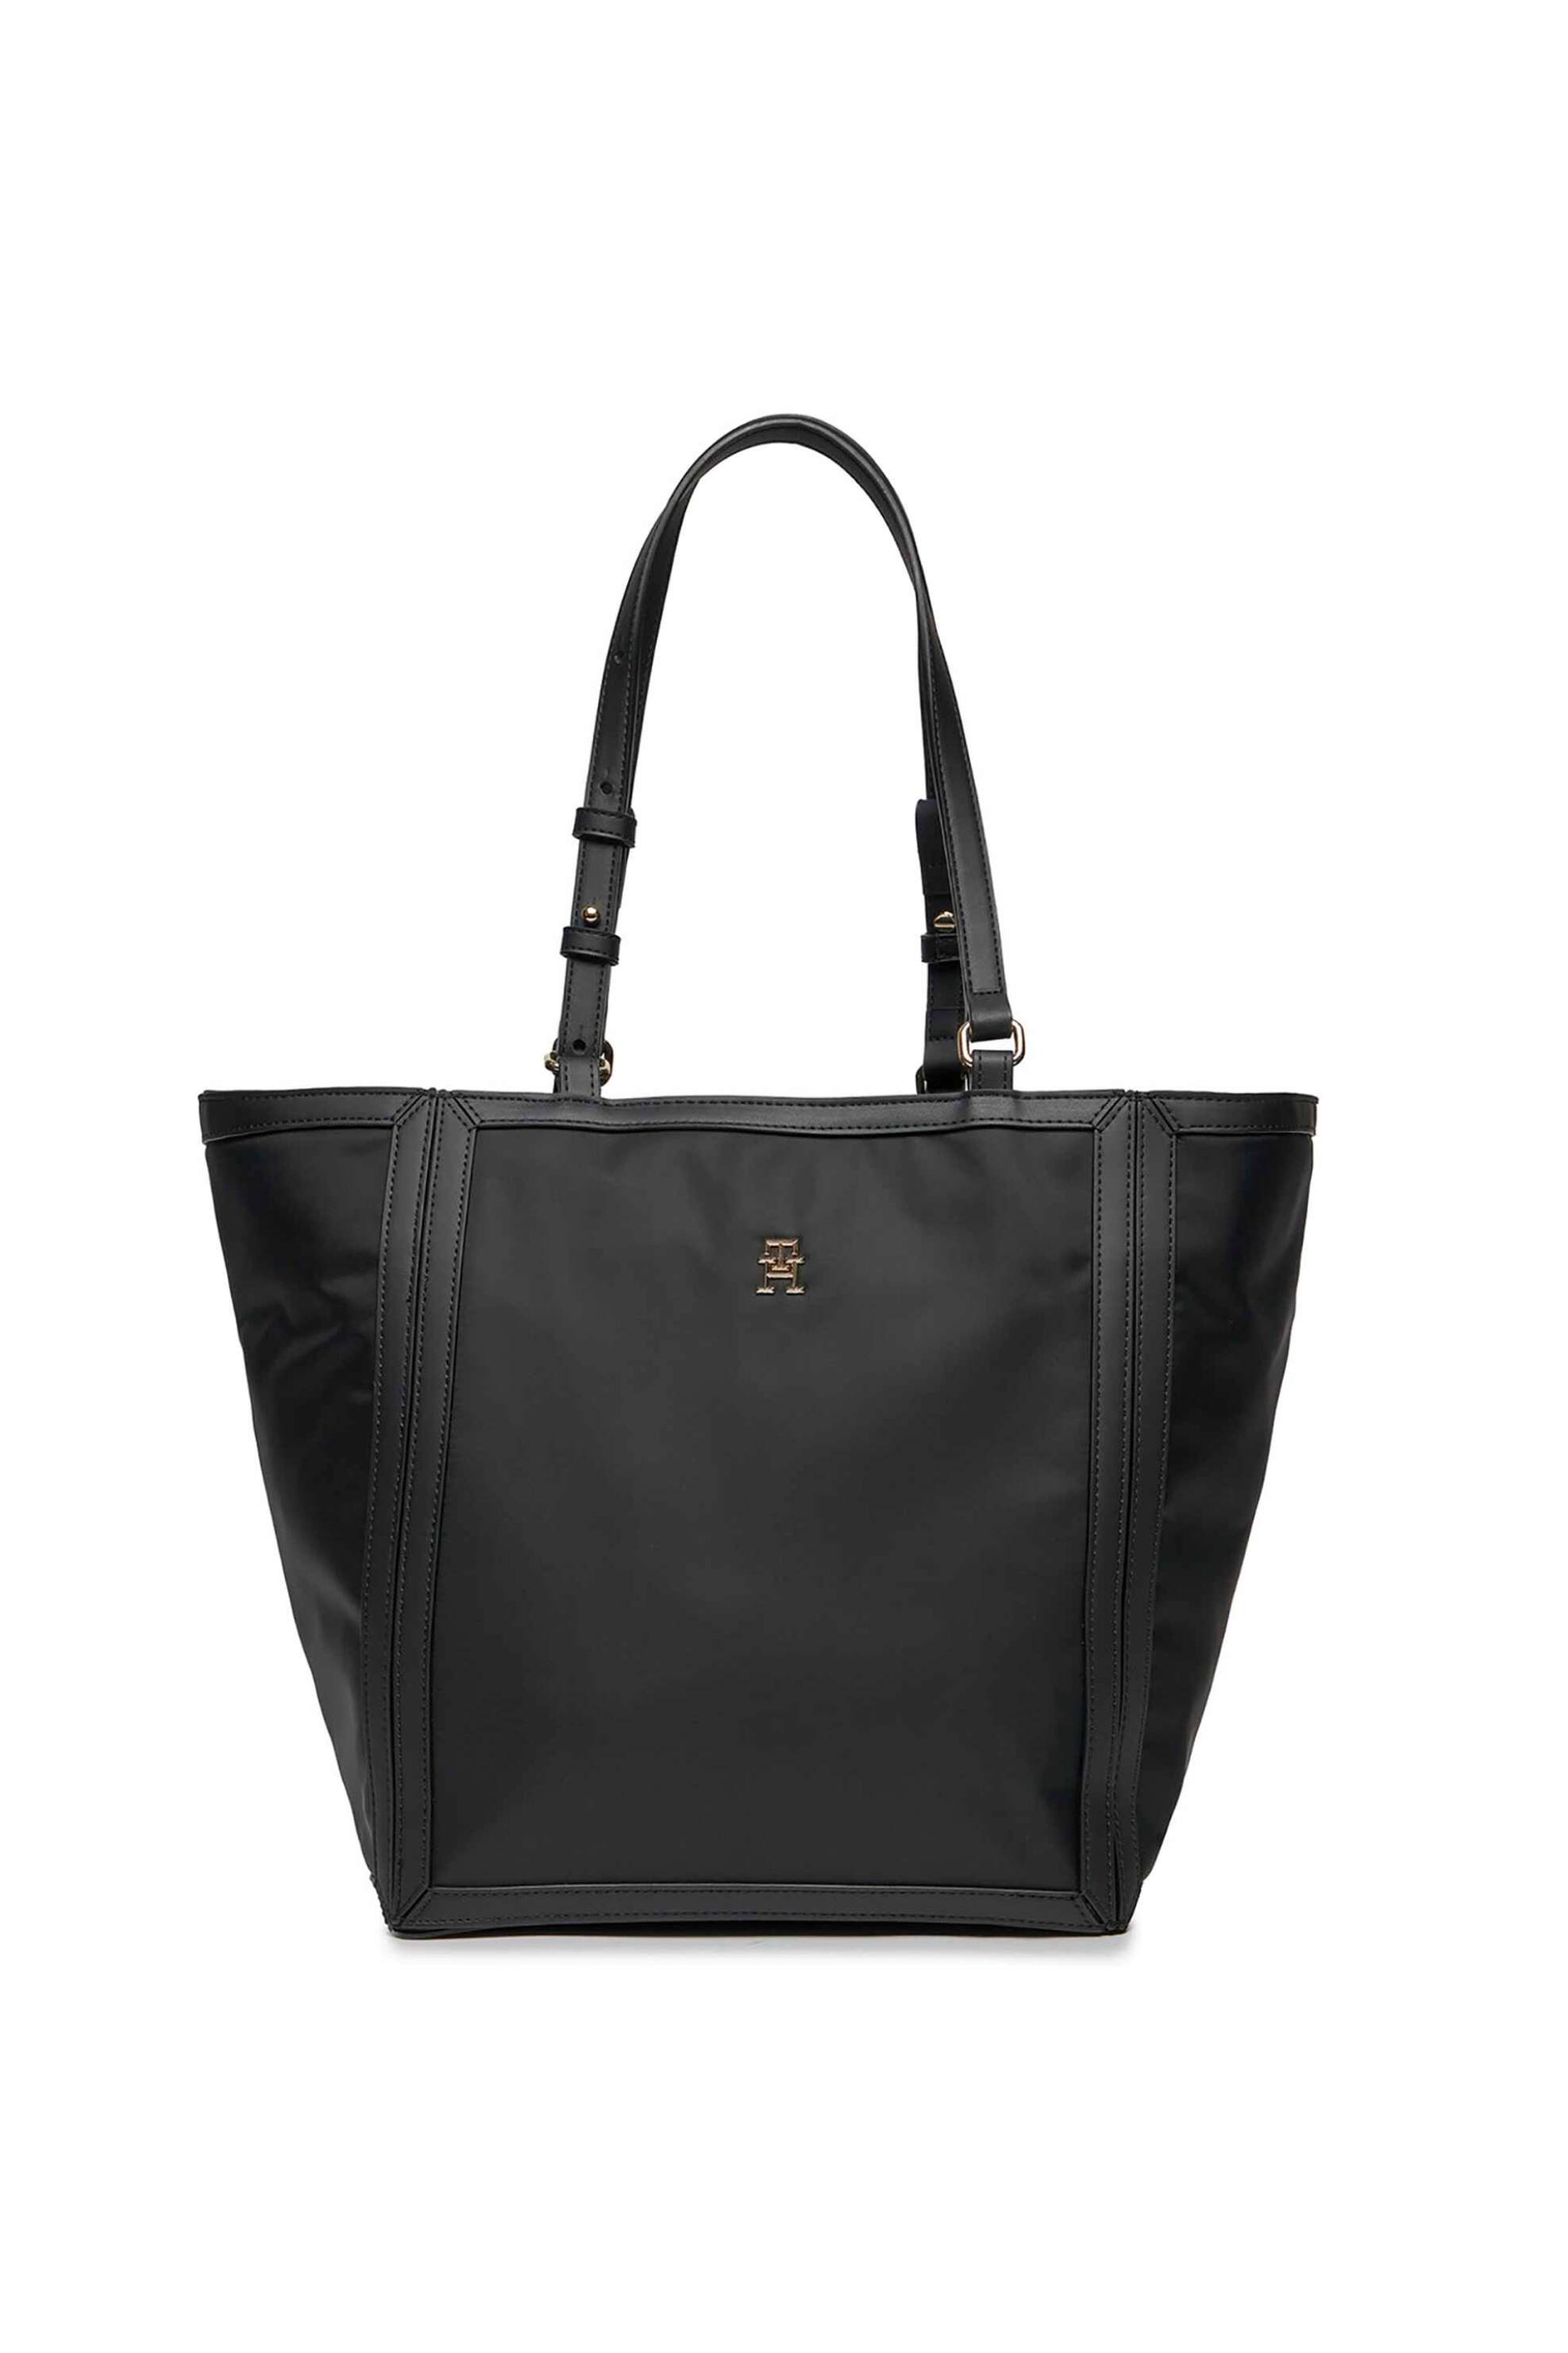 Γυναίκα > ΤΣΑΝΤΕΣ > Τσάντες Ώμου & Shopper Bags Tommy Hilfiger γυναικεία τσάντα tote με μεταλλικό λογότυπο - AW0AW15717 Μαύρο